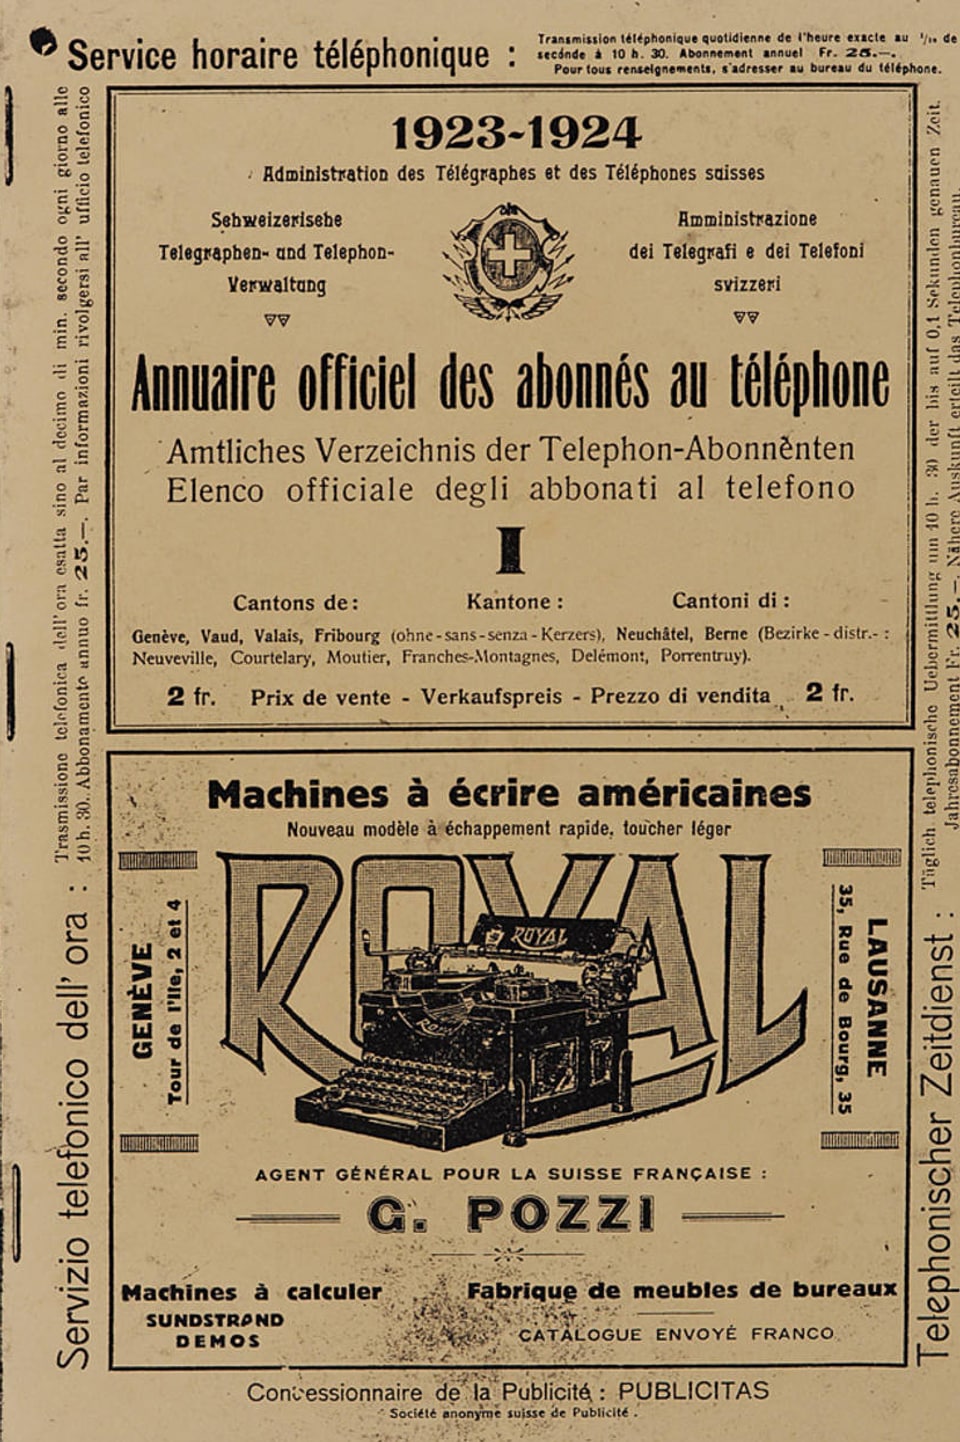 Titelblatt eines alten Telefonbuchs.